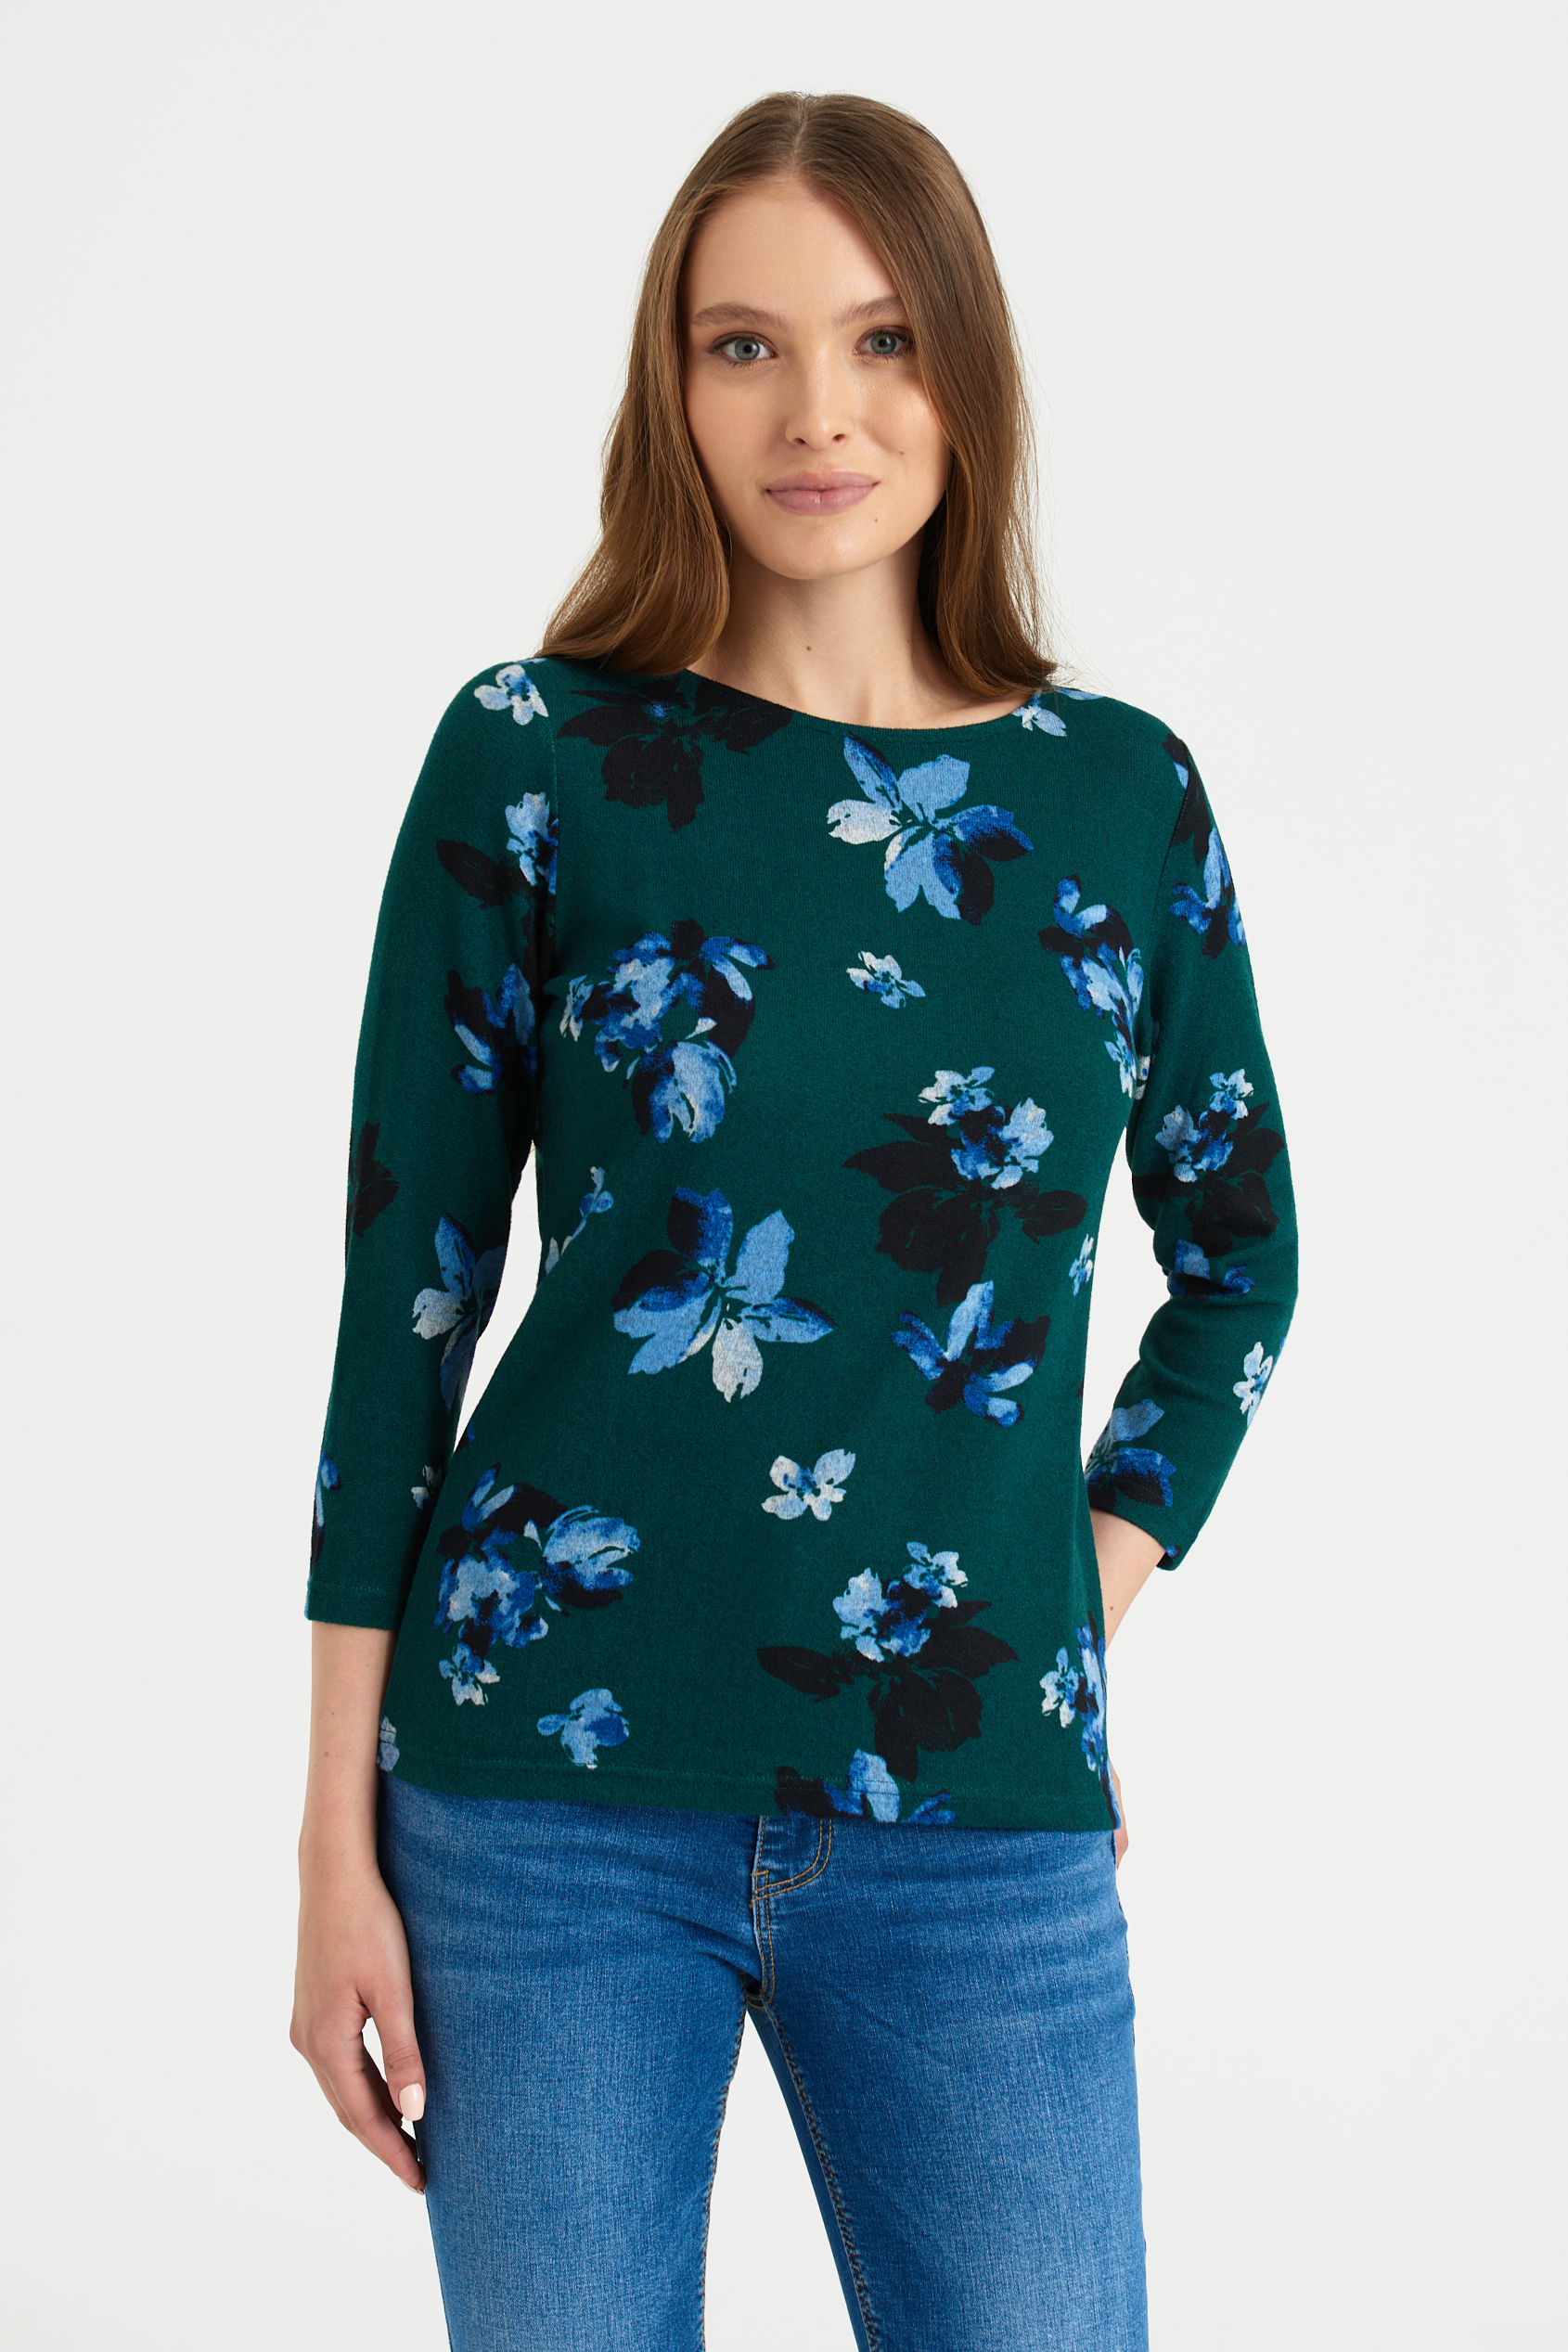 Ciemnozielony sweter z rękawami 3/4, nadruk w kwiaty